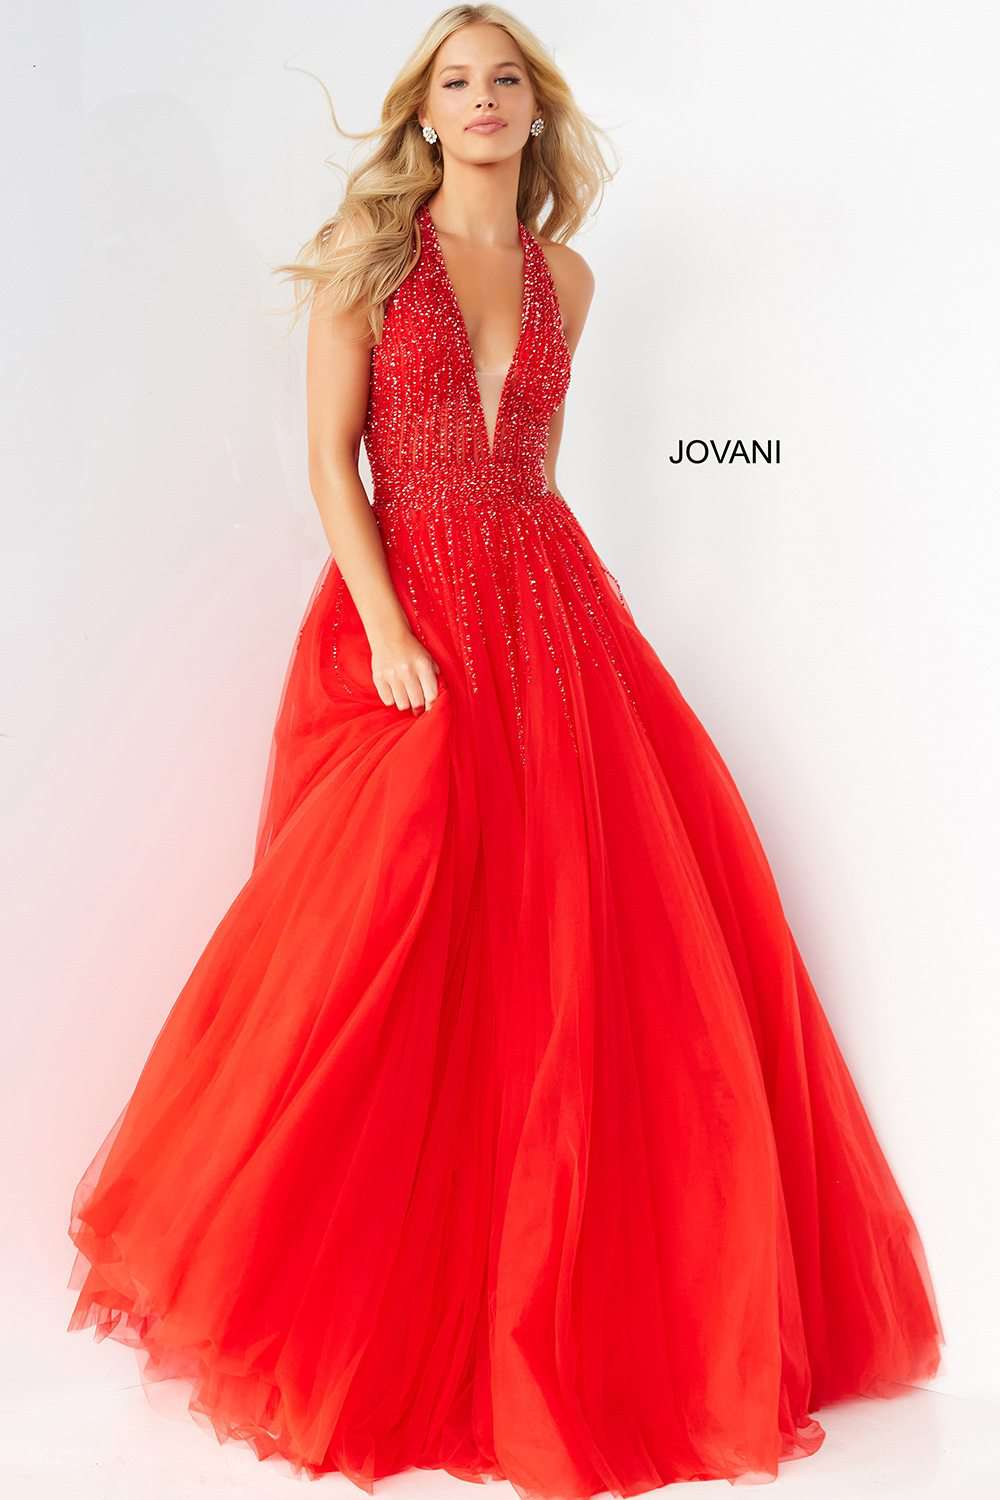 Halter Neckline Tulle Prom Dress Jovani 06598 - Morvarieds Fashion